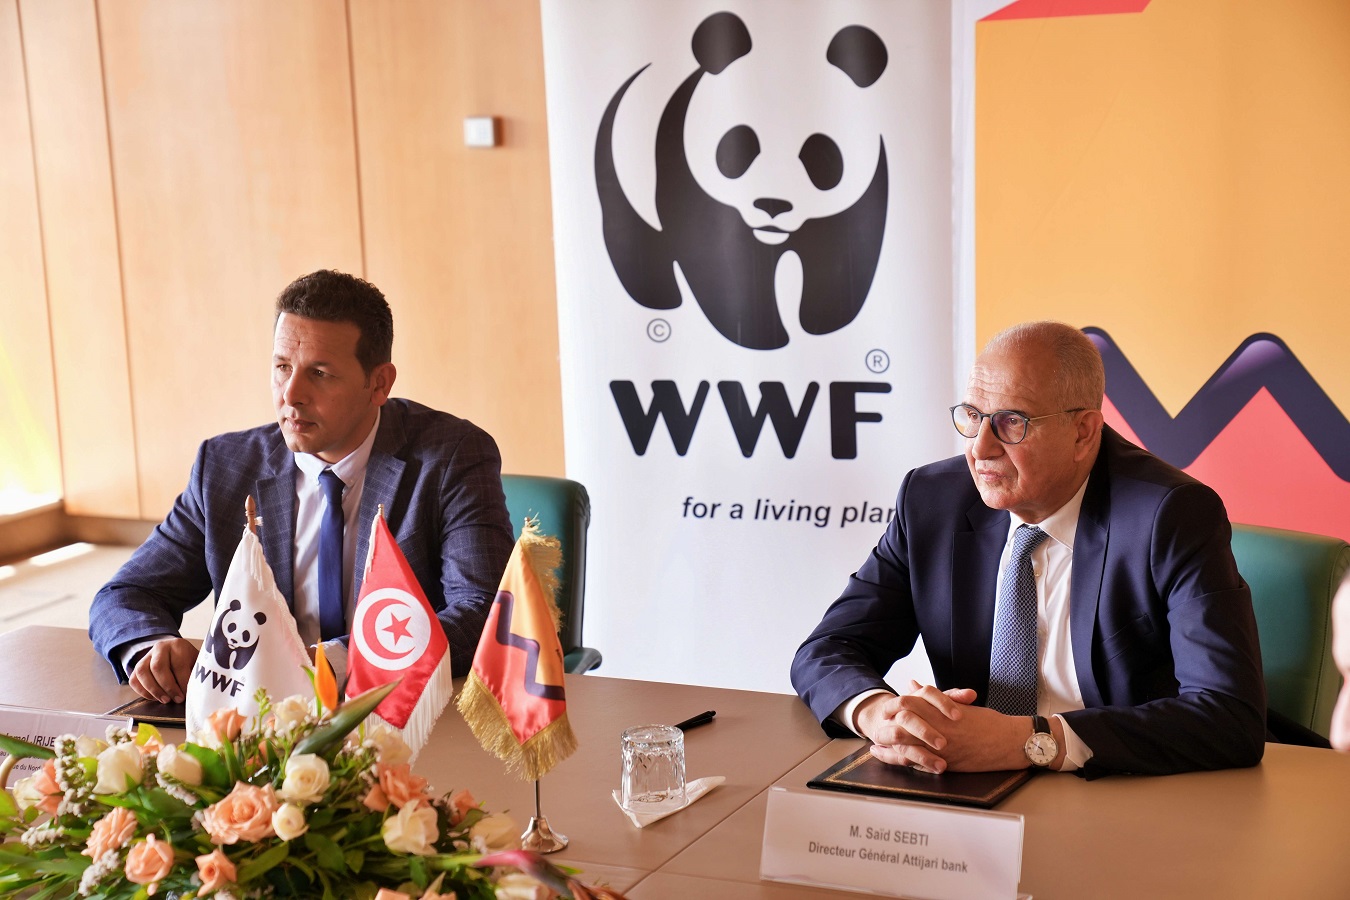 التجاري بنك يوقع اتفاقية شراكة مع الصندوق العالمي للطبيعة في شمال إفريقيا